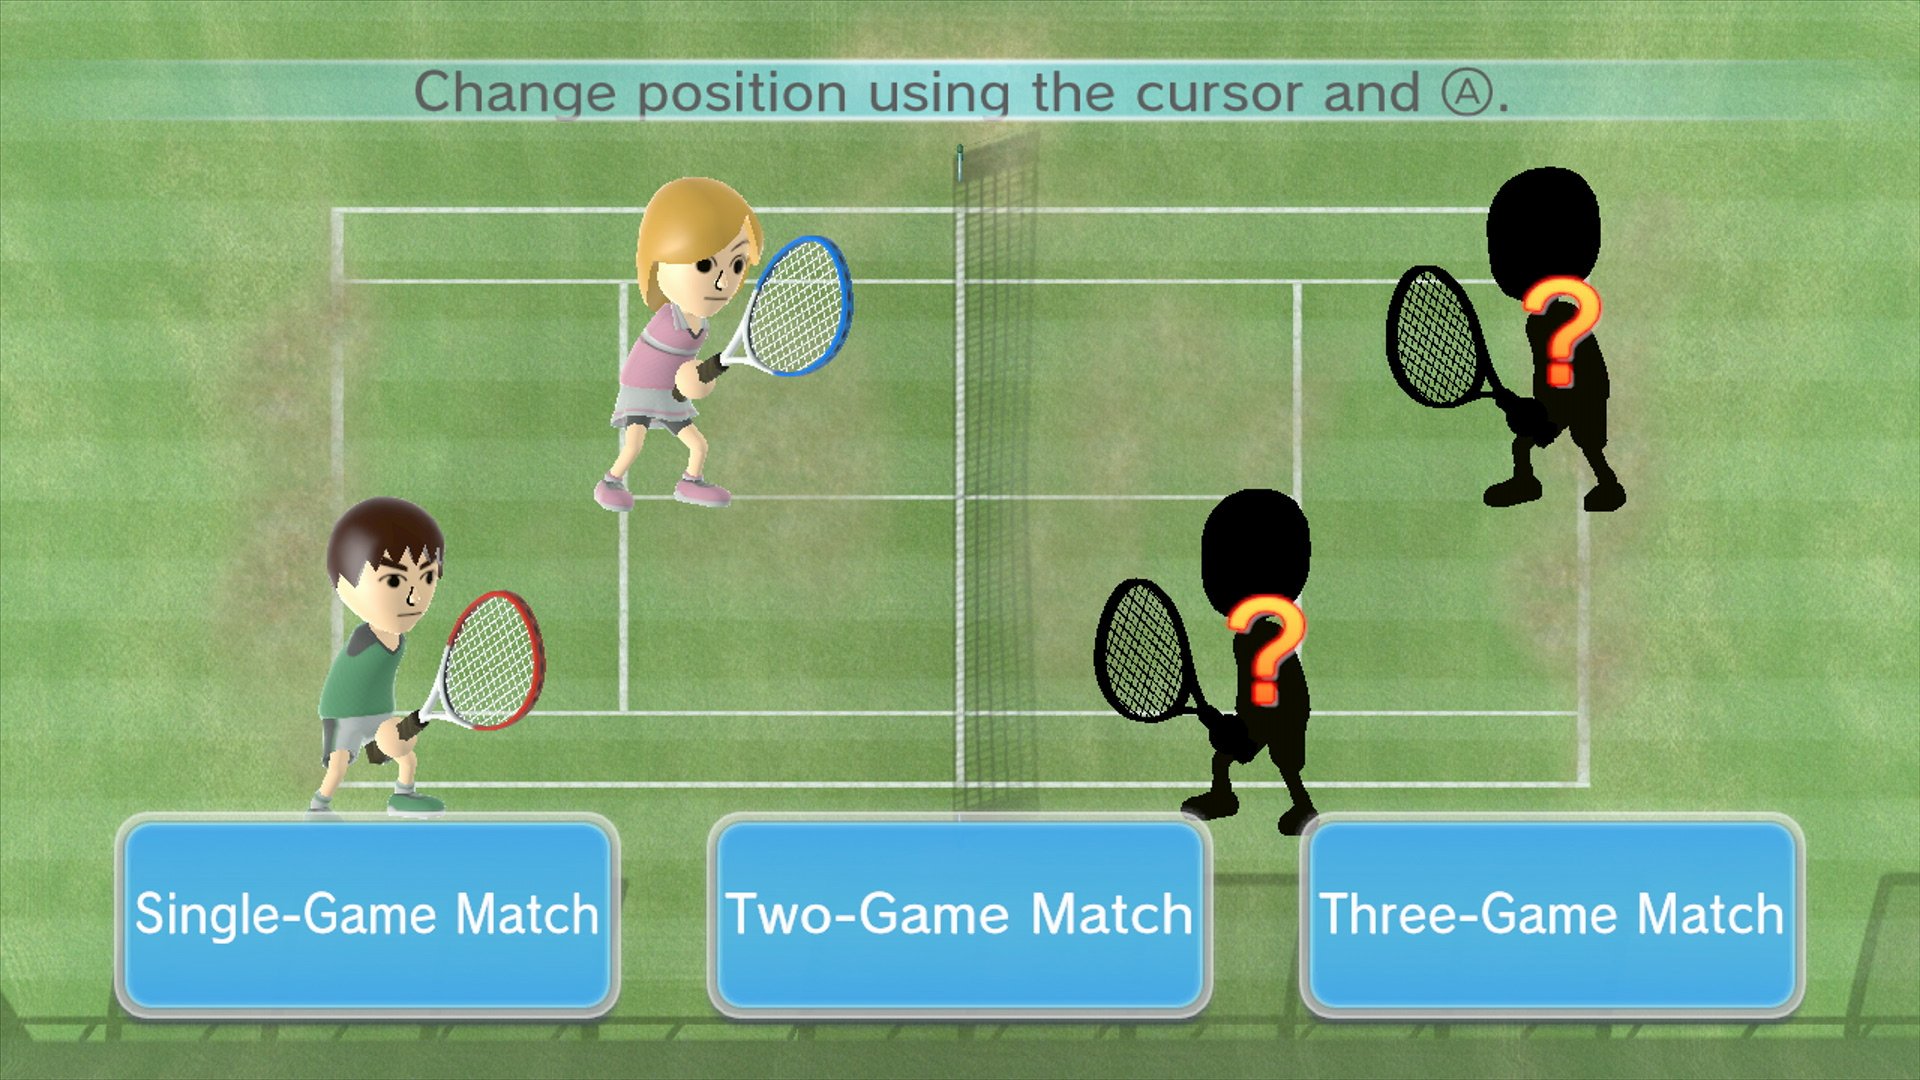 Wii tennis